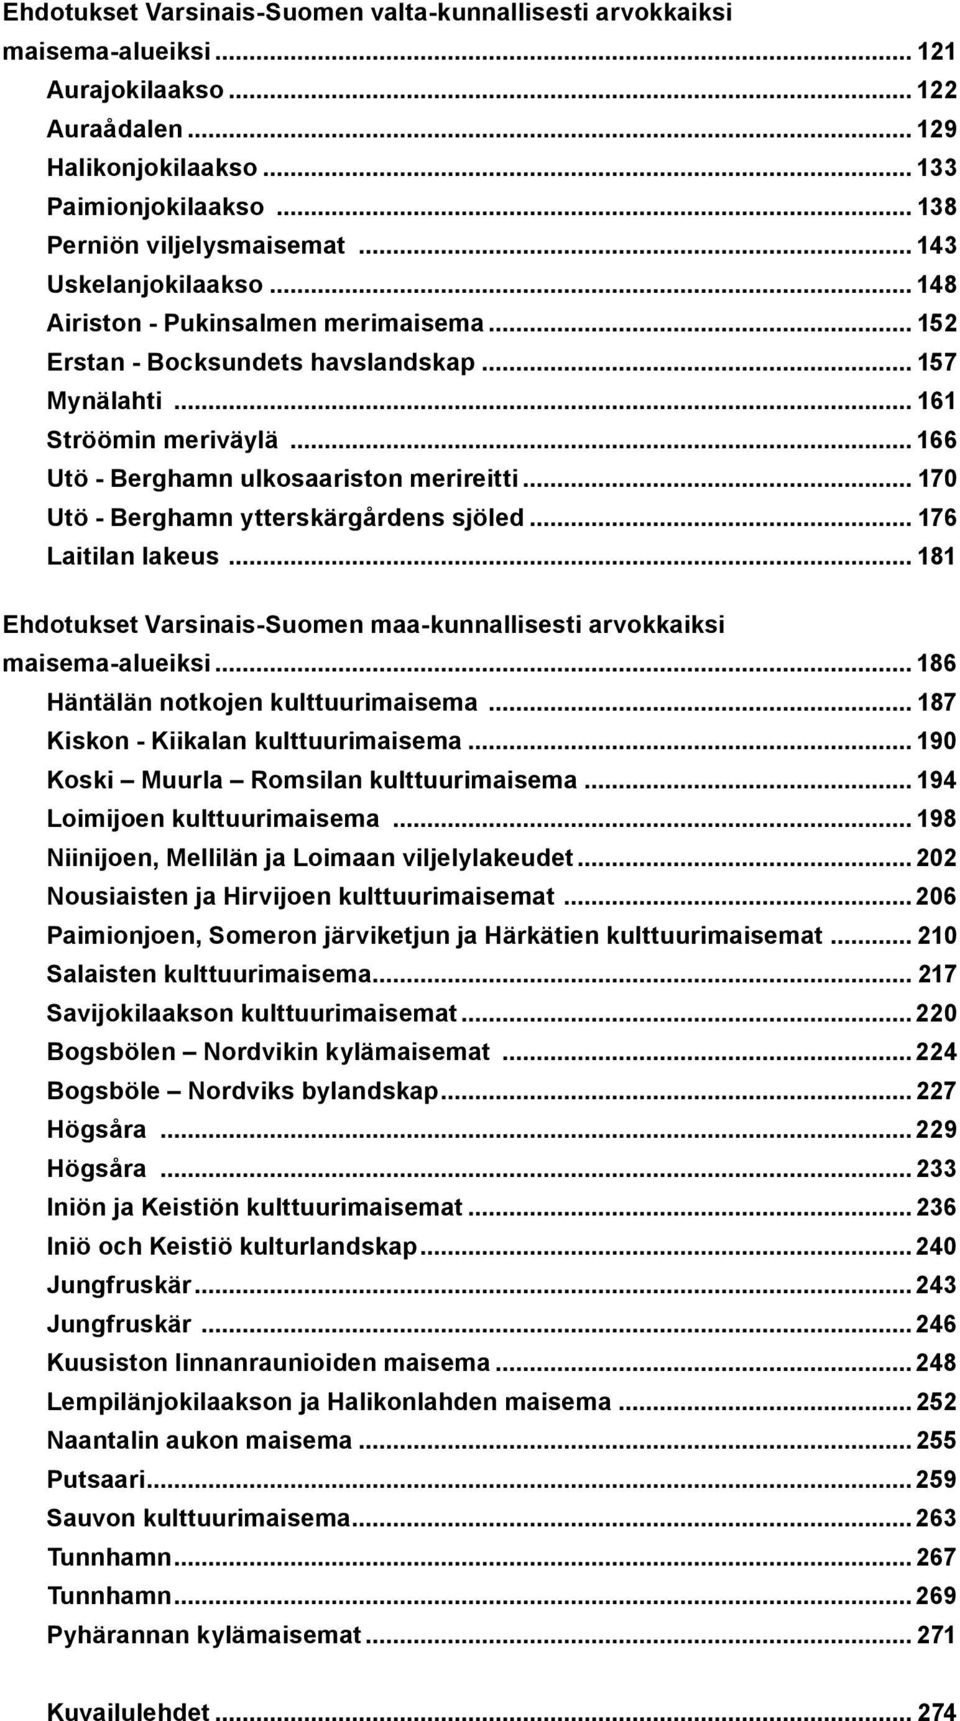 .. 170 Utö - Berghamn ytterskärgårdens sjöled... 176 Laitilan lakeus... 181 Ehdotukset Varsinais-Suomen maa-kunnallisesti arvokkaiksi maisema-alueiksi... 186 Häntälän notkojen kulttuurimaisema.